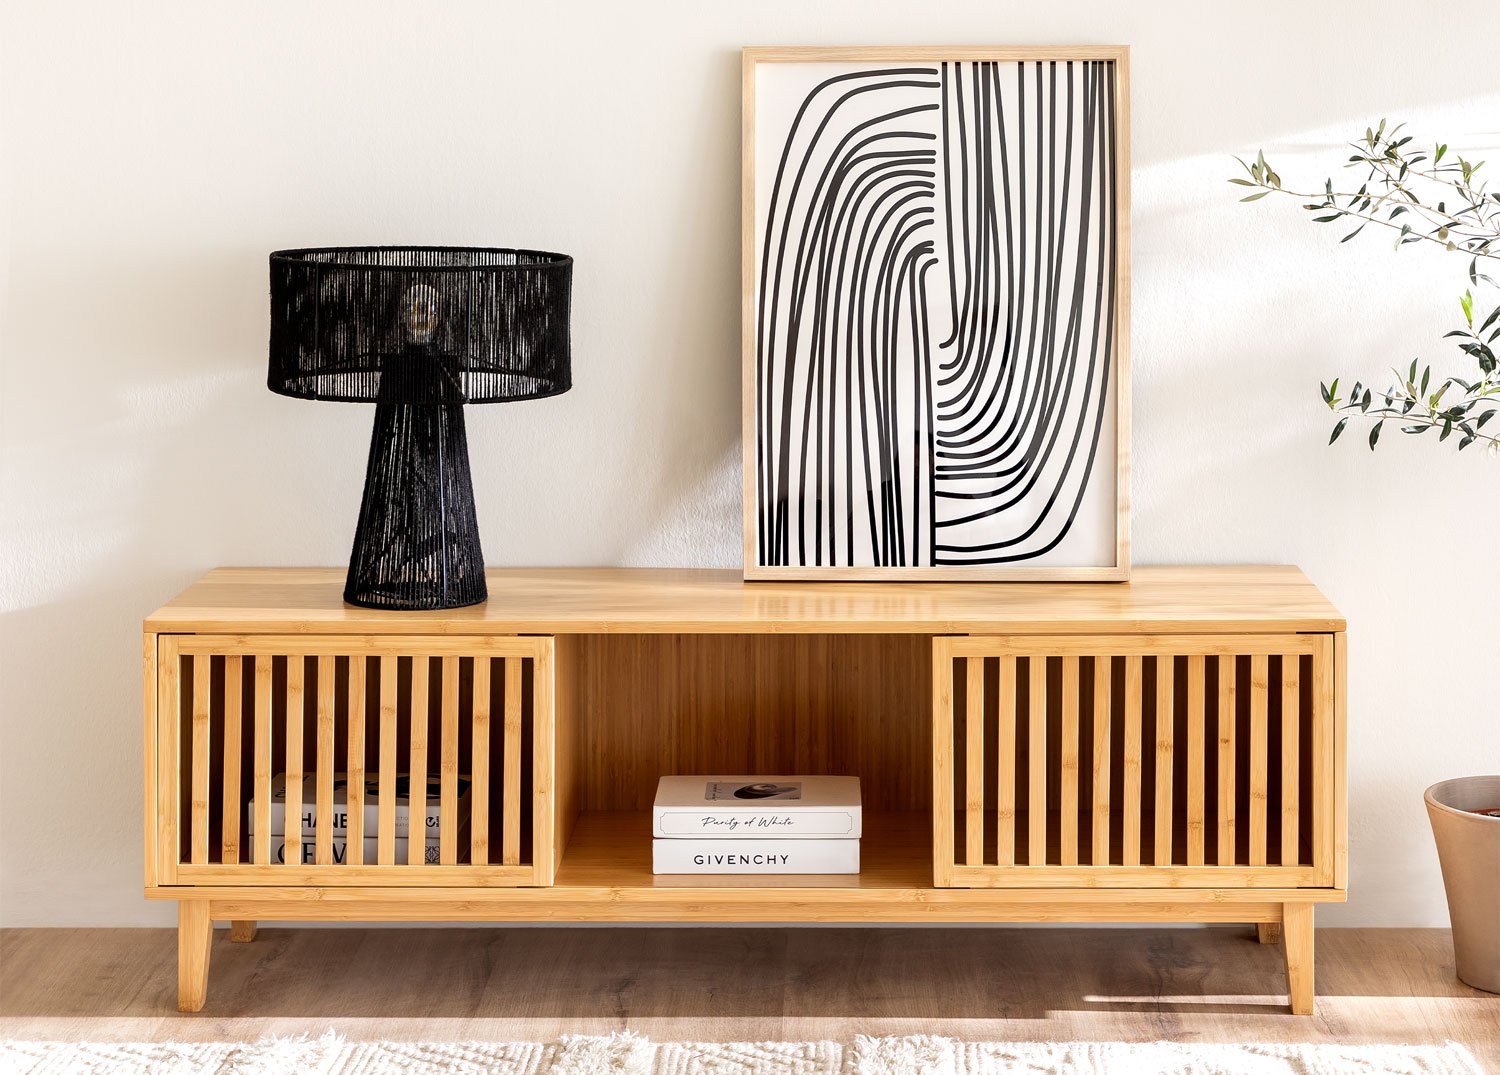 Muebles TV y Mesas televisión: en madera y más - SKLUM